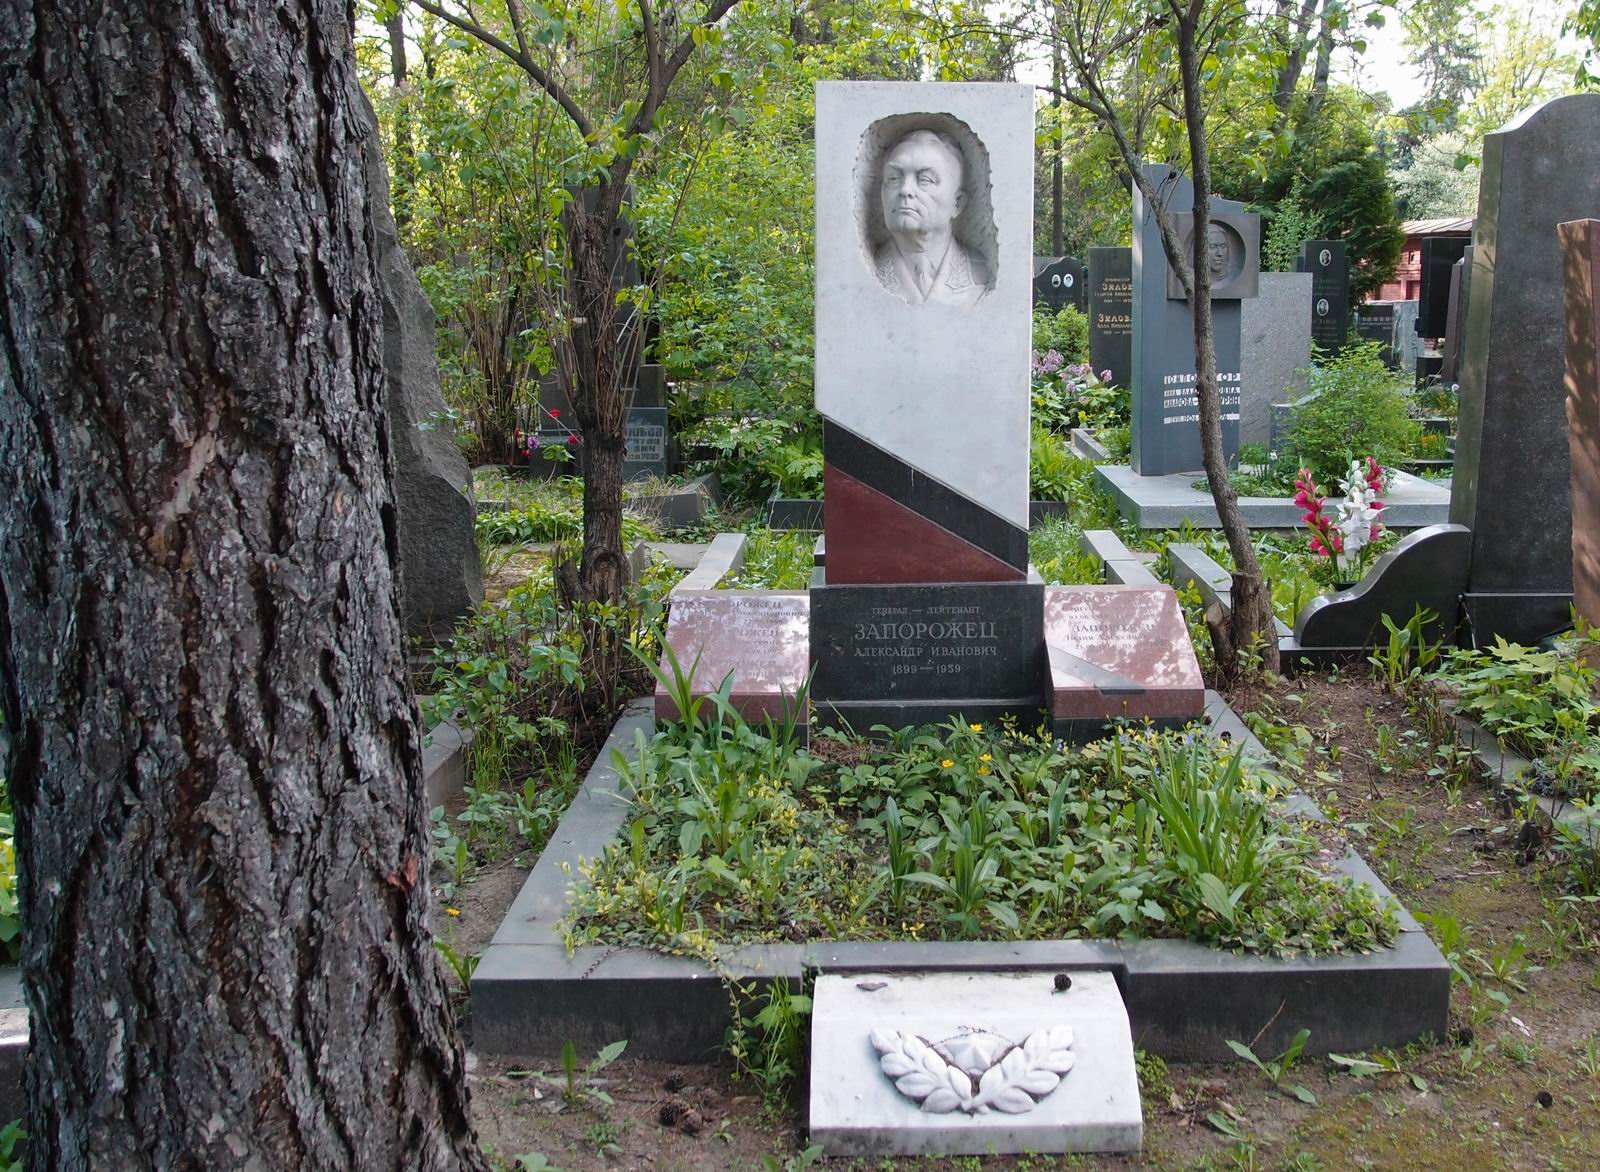 Памятник на могиле Запорожца А.И. (1899–1959), ск. Г.Постников, на Новодевичьем кладбище (5–31–5). Нажмите левую кнопку мыши чтобы увидеть фрагмент памятника.